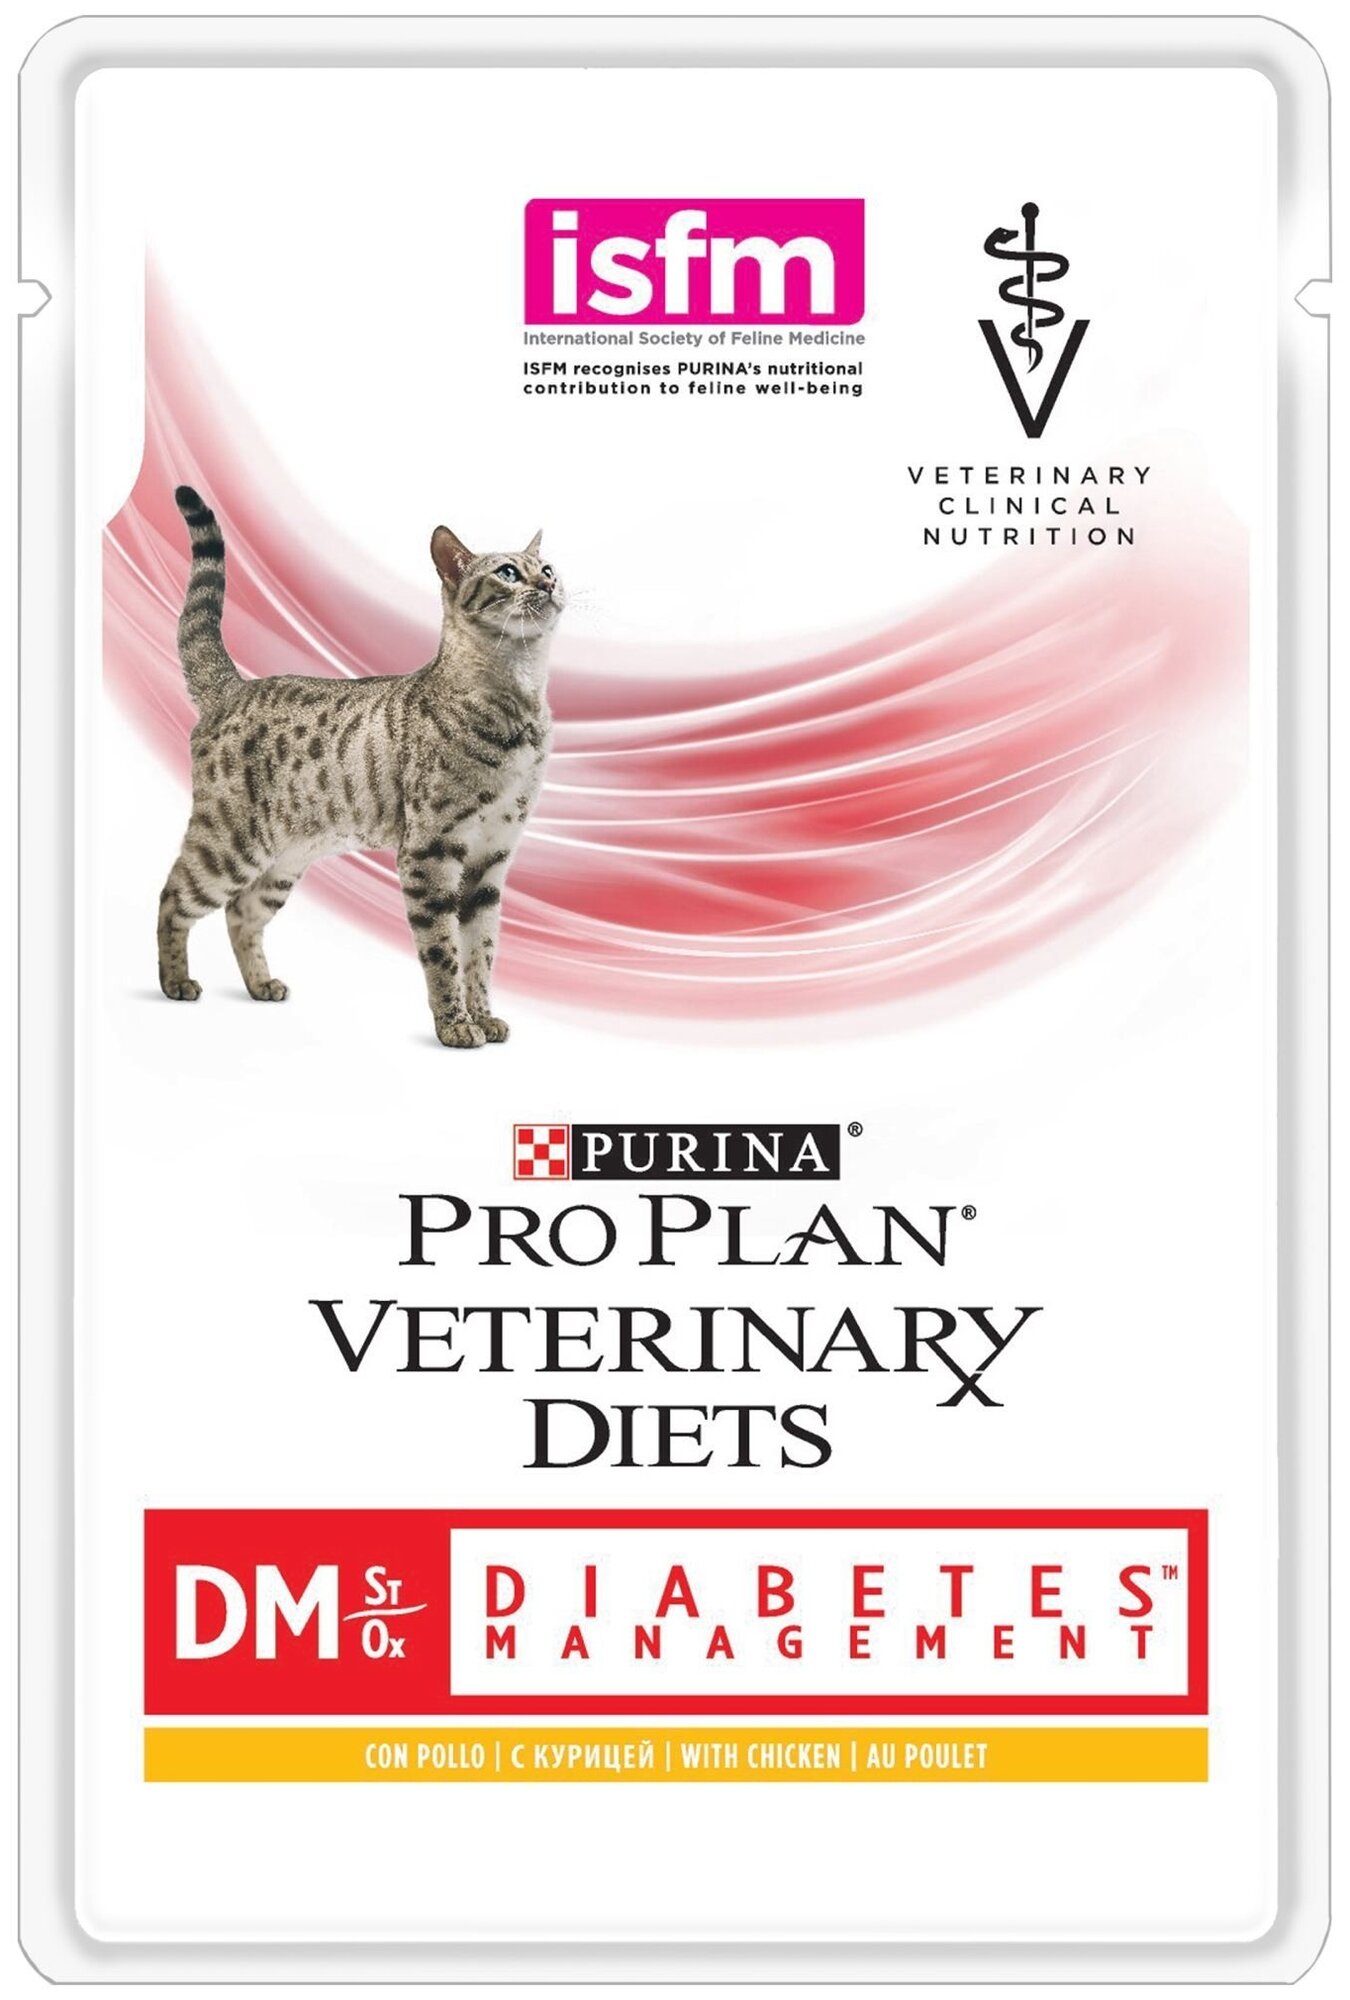 Влажный корм для кошек Pro Plan Veterinary Diets Diabetes Management DM Diabetes Management, при сахарном диабете, с курицей 85 г (кусочки в желе)